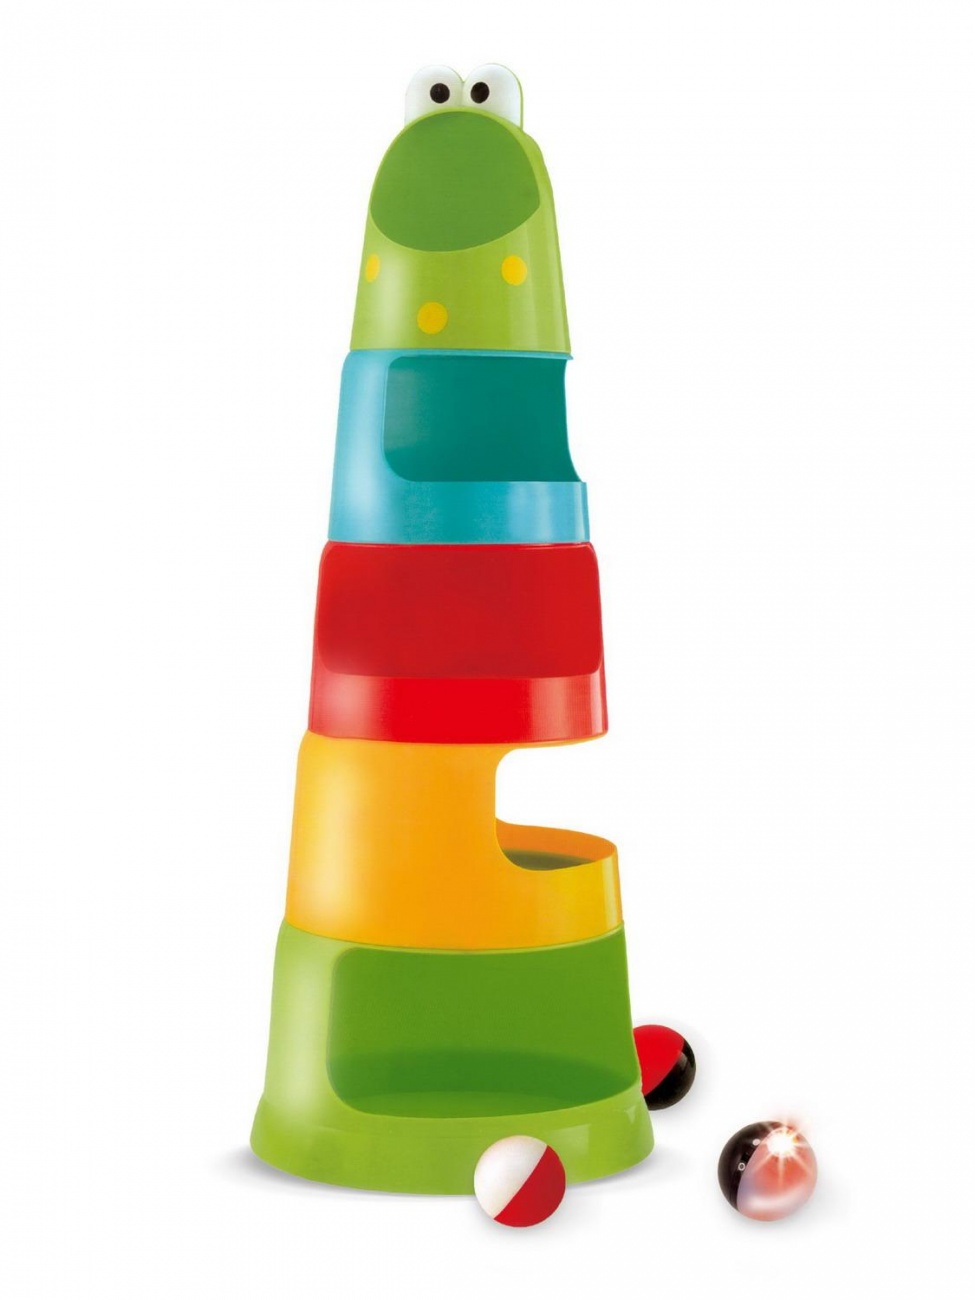 Развивающая игрушка Жирафики Пирамидка 53 см 3 шарика, один со светом 939855